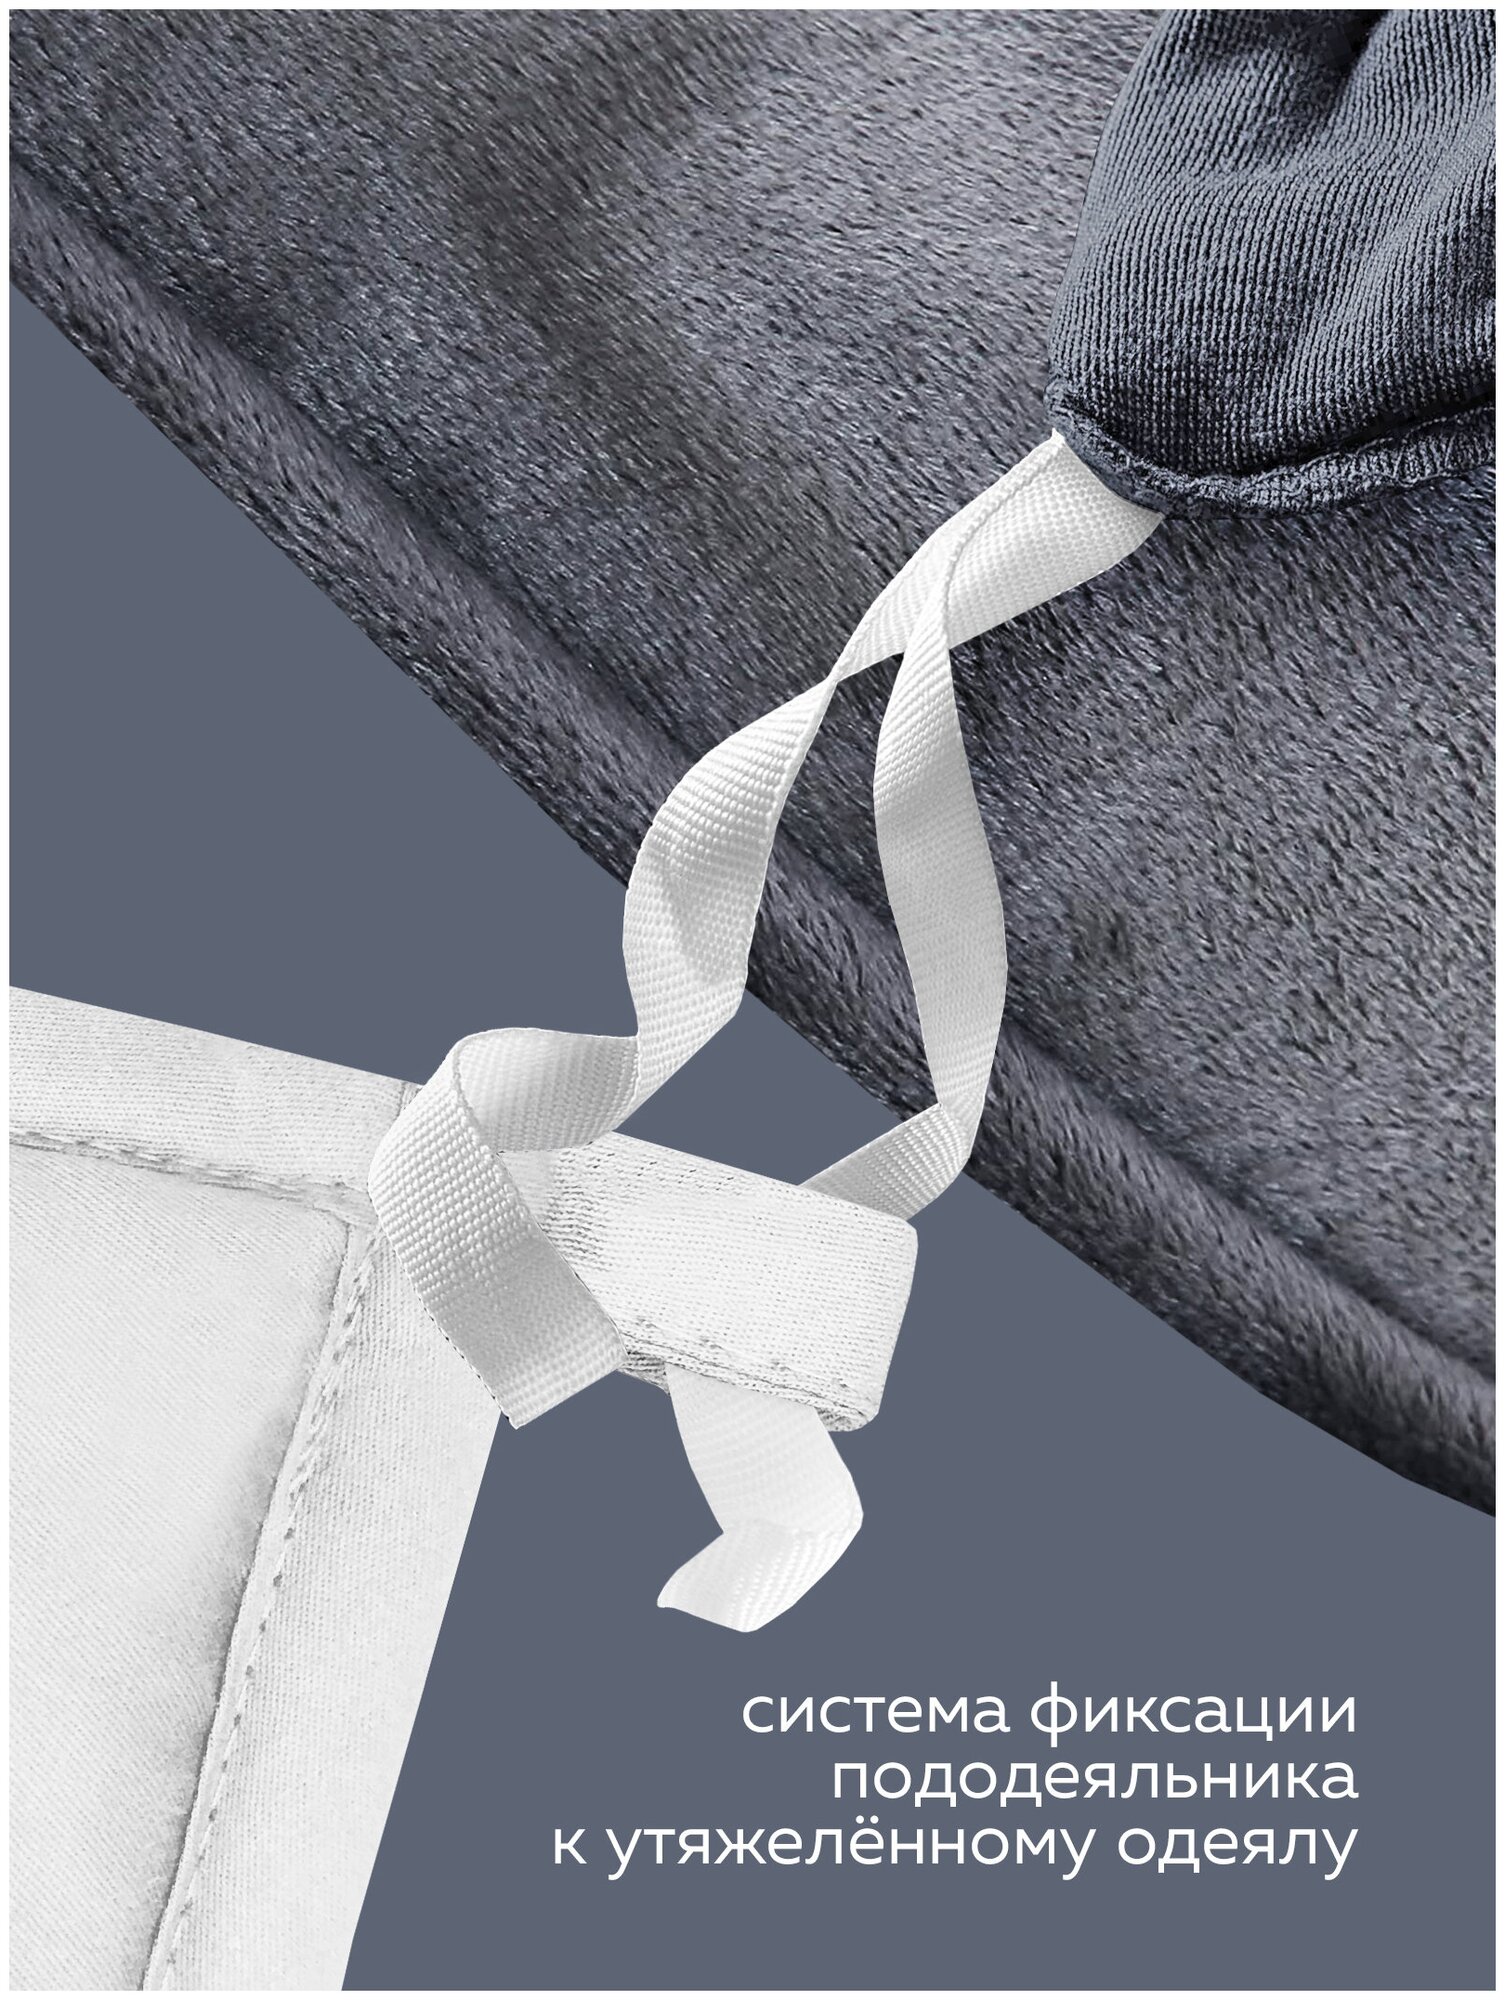 Утяжеленное одеяло Gravity (Гравити) Wellina, 140x205 см. белое 8 кг./ Сенсорное одеяло Gravity 140 x 205 см. / Тяжелое одеяло 8 кг. - фотография № 19